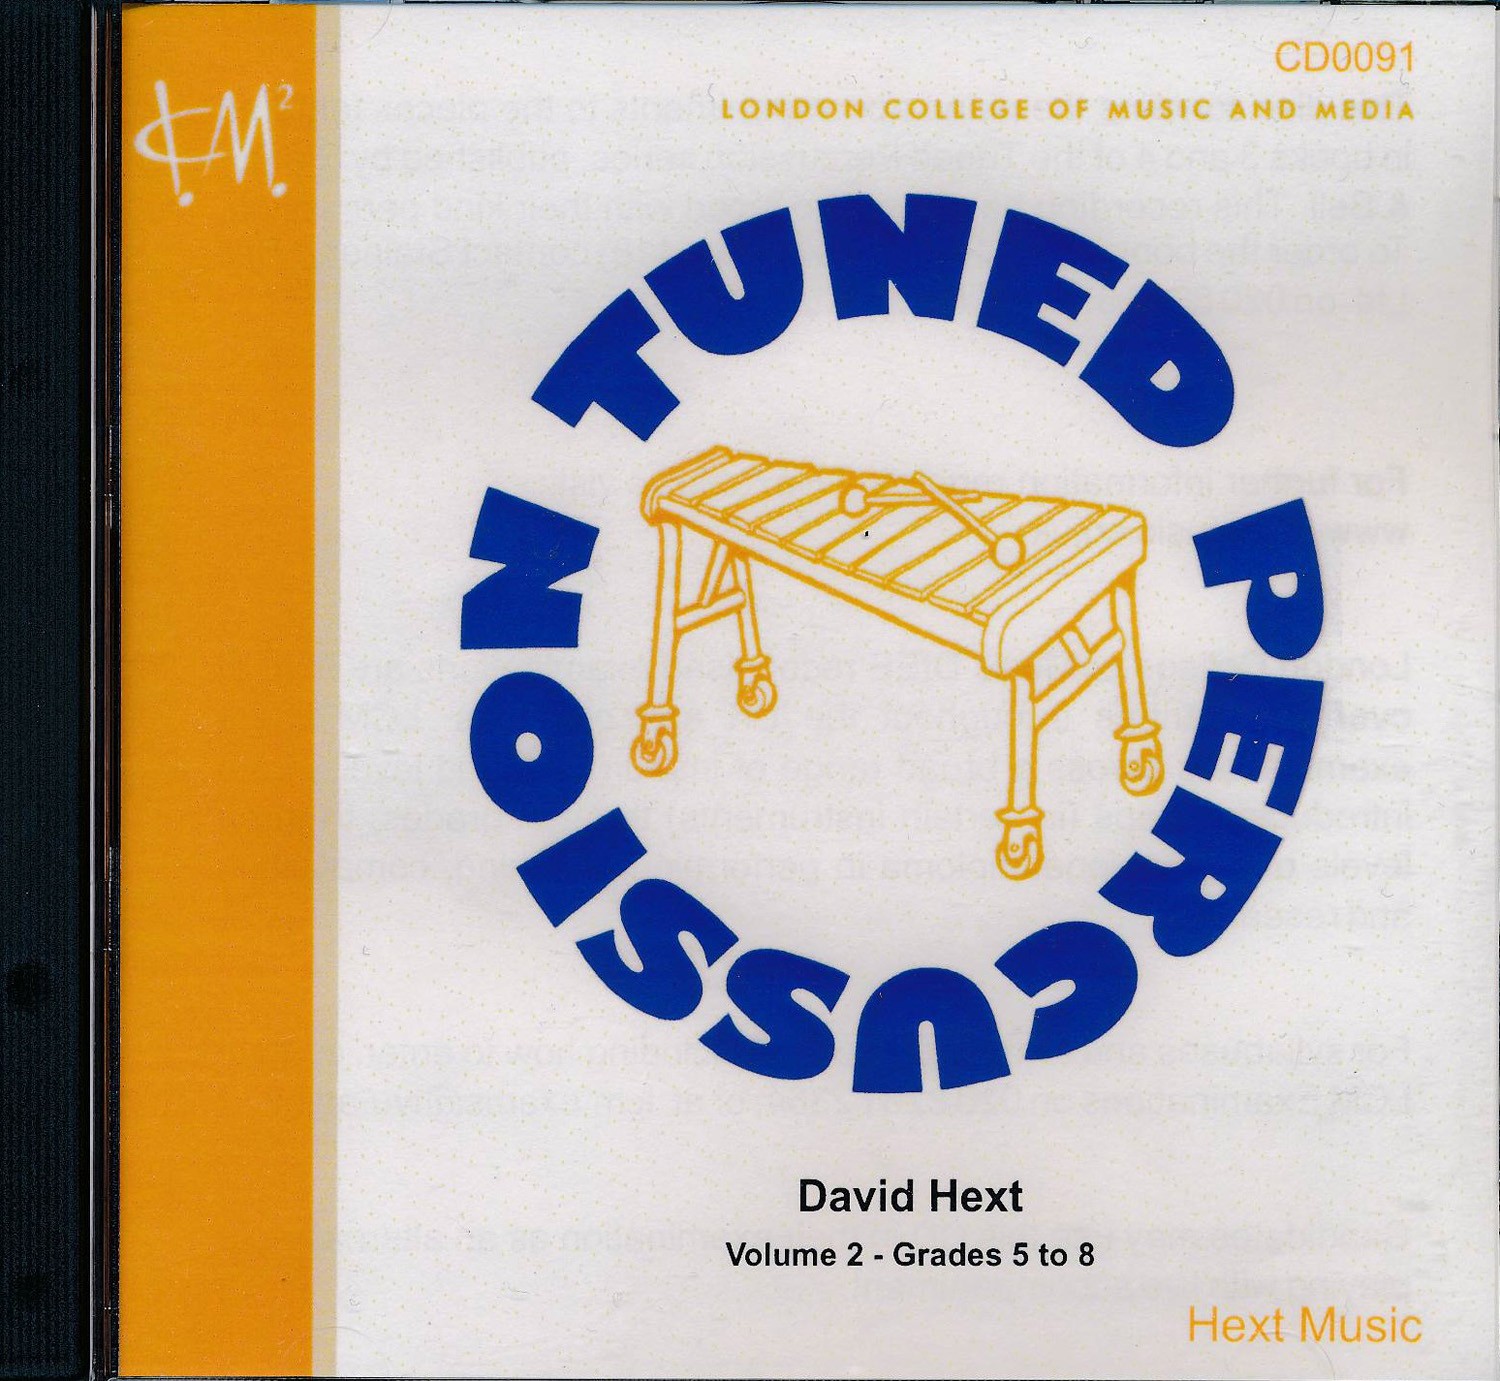 LCM Tuned Percussion Volume 2: grade 5-8 accompaniment CD